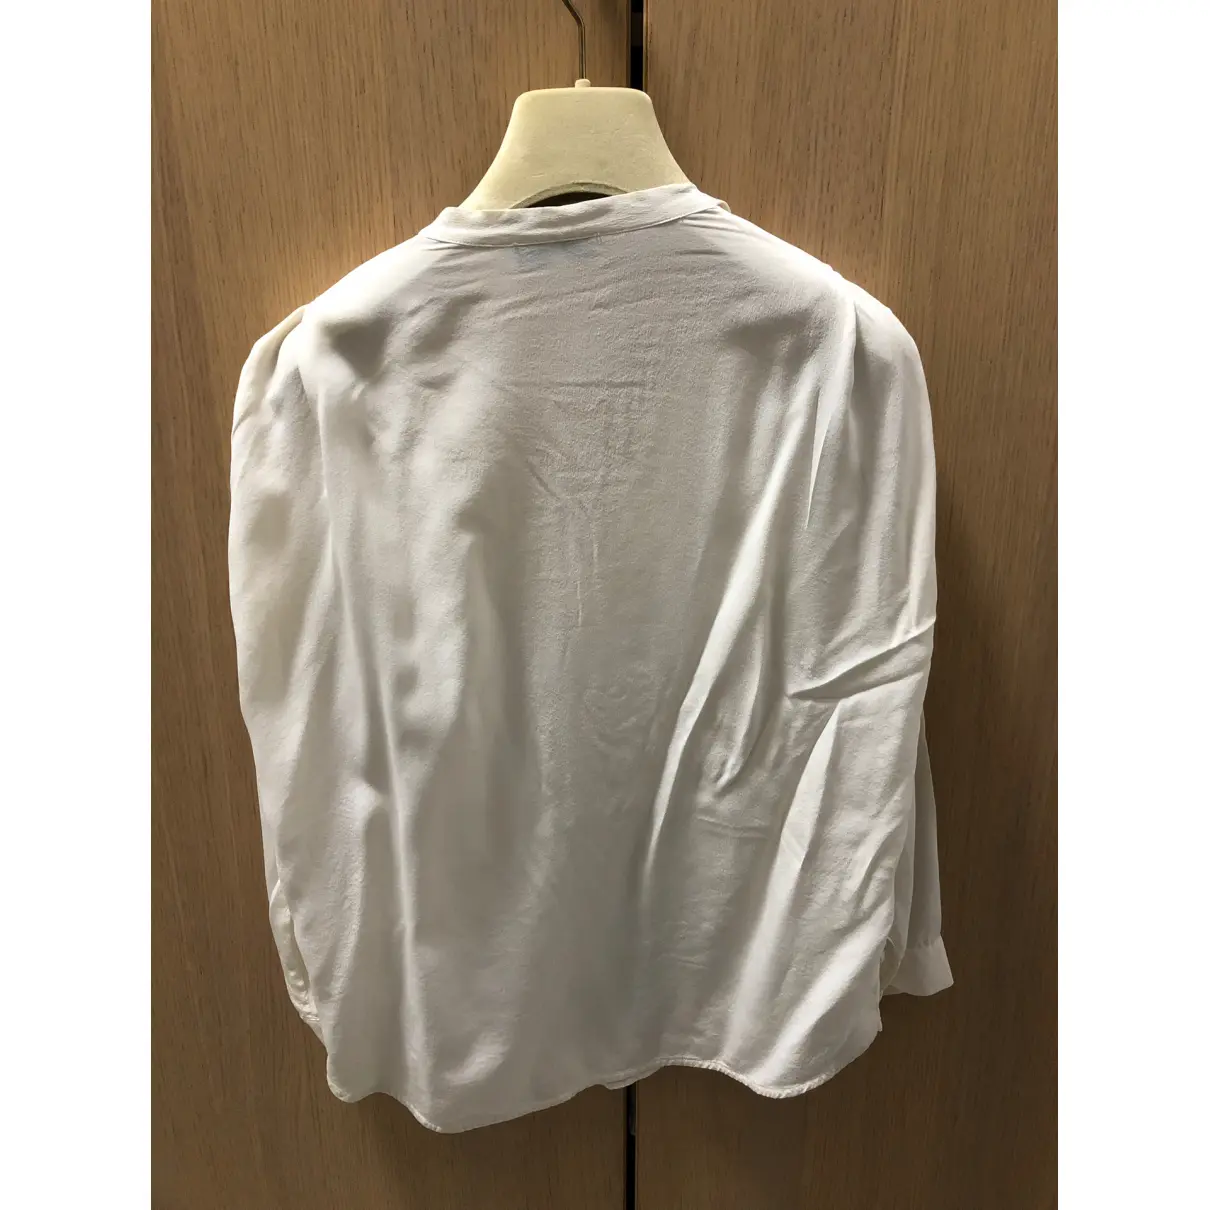 Buy Sandro Silk blouse online